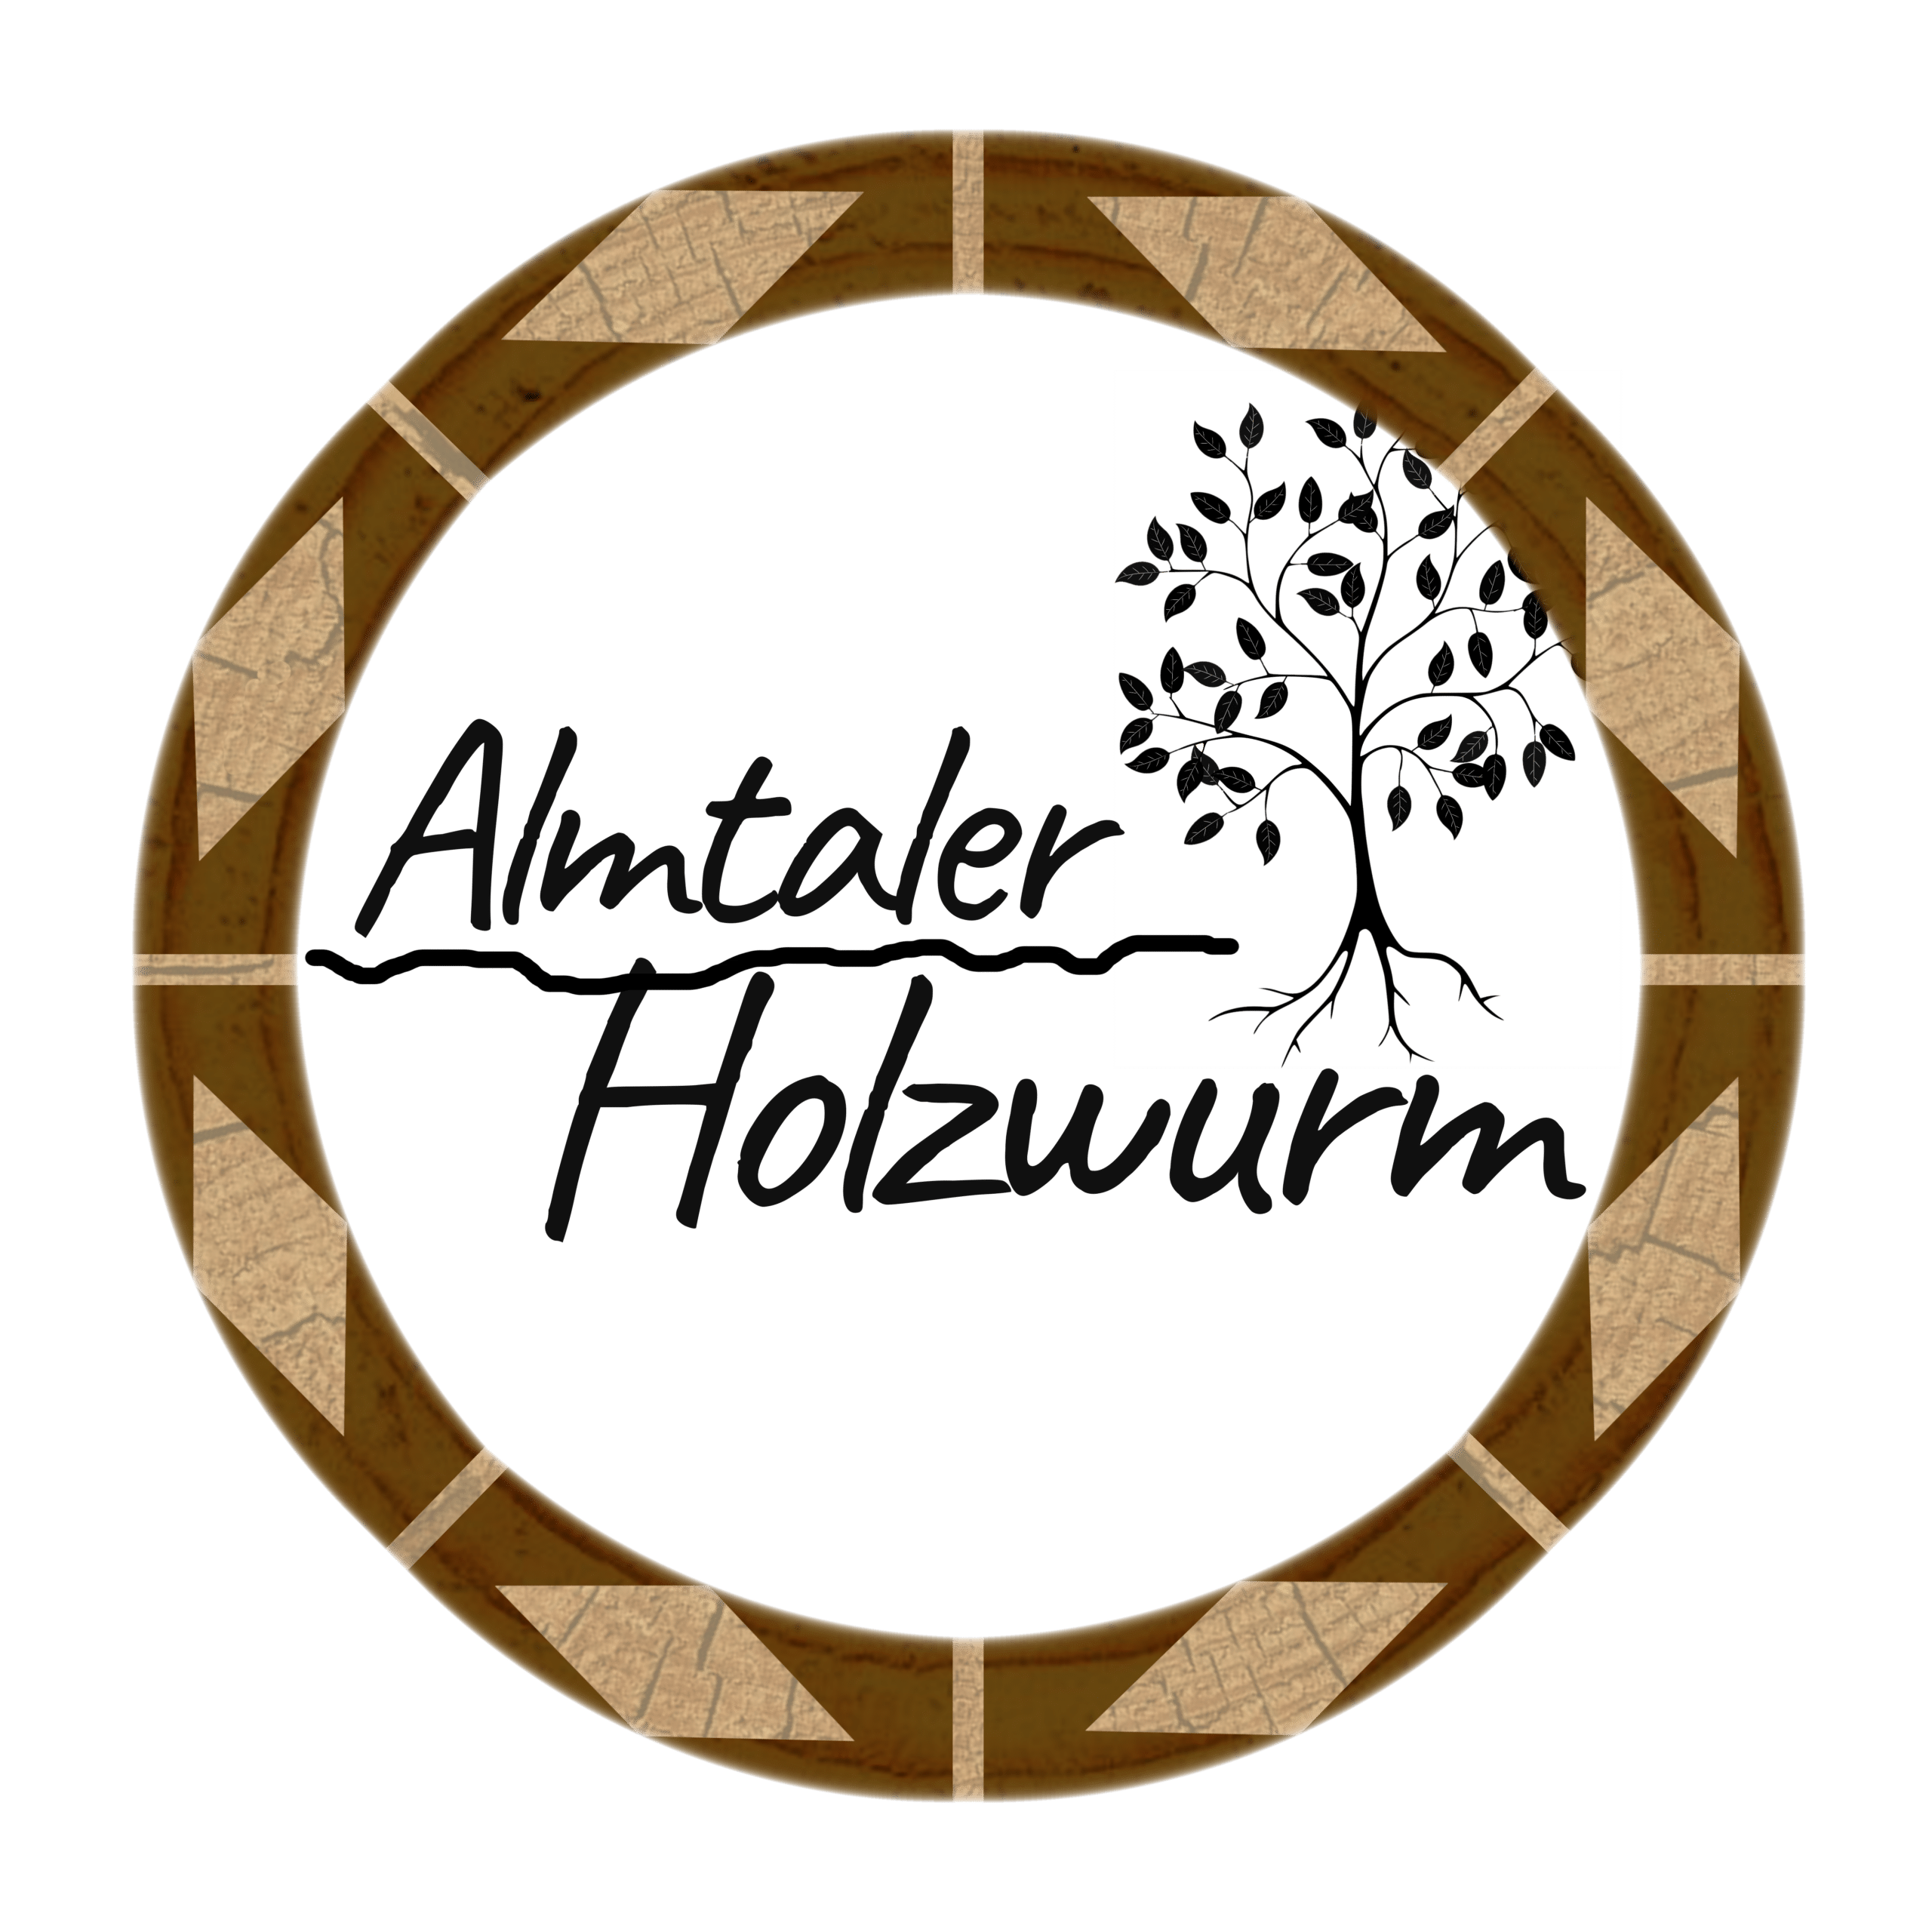 (c) Almtaler-holzwurm.at